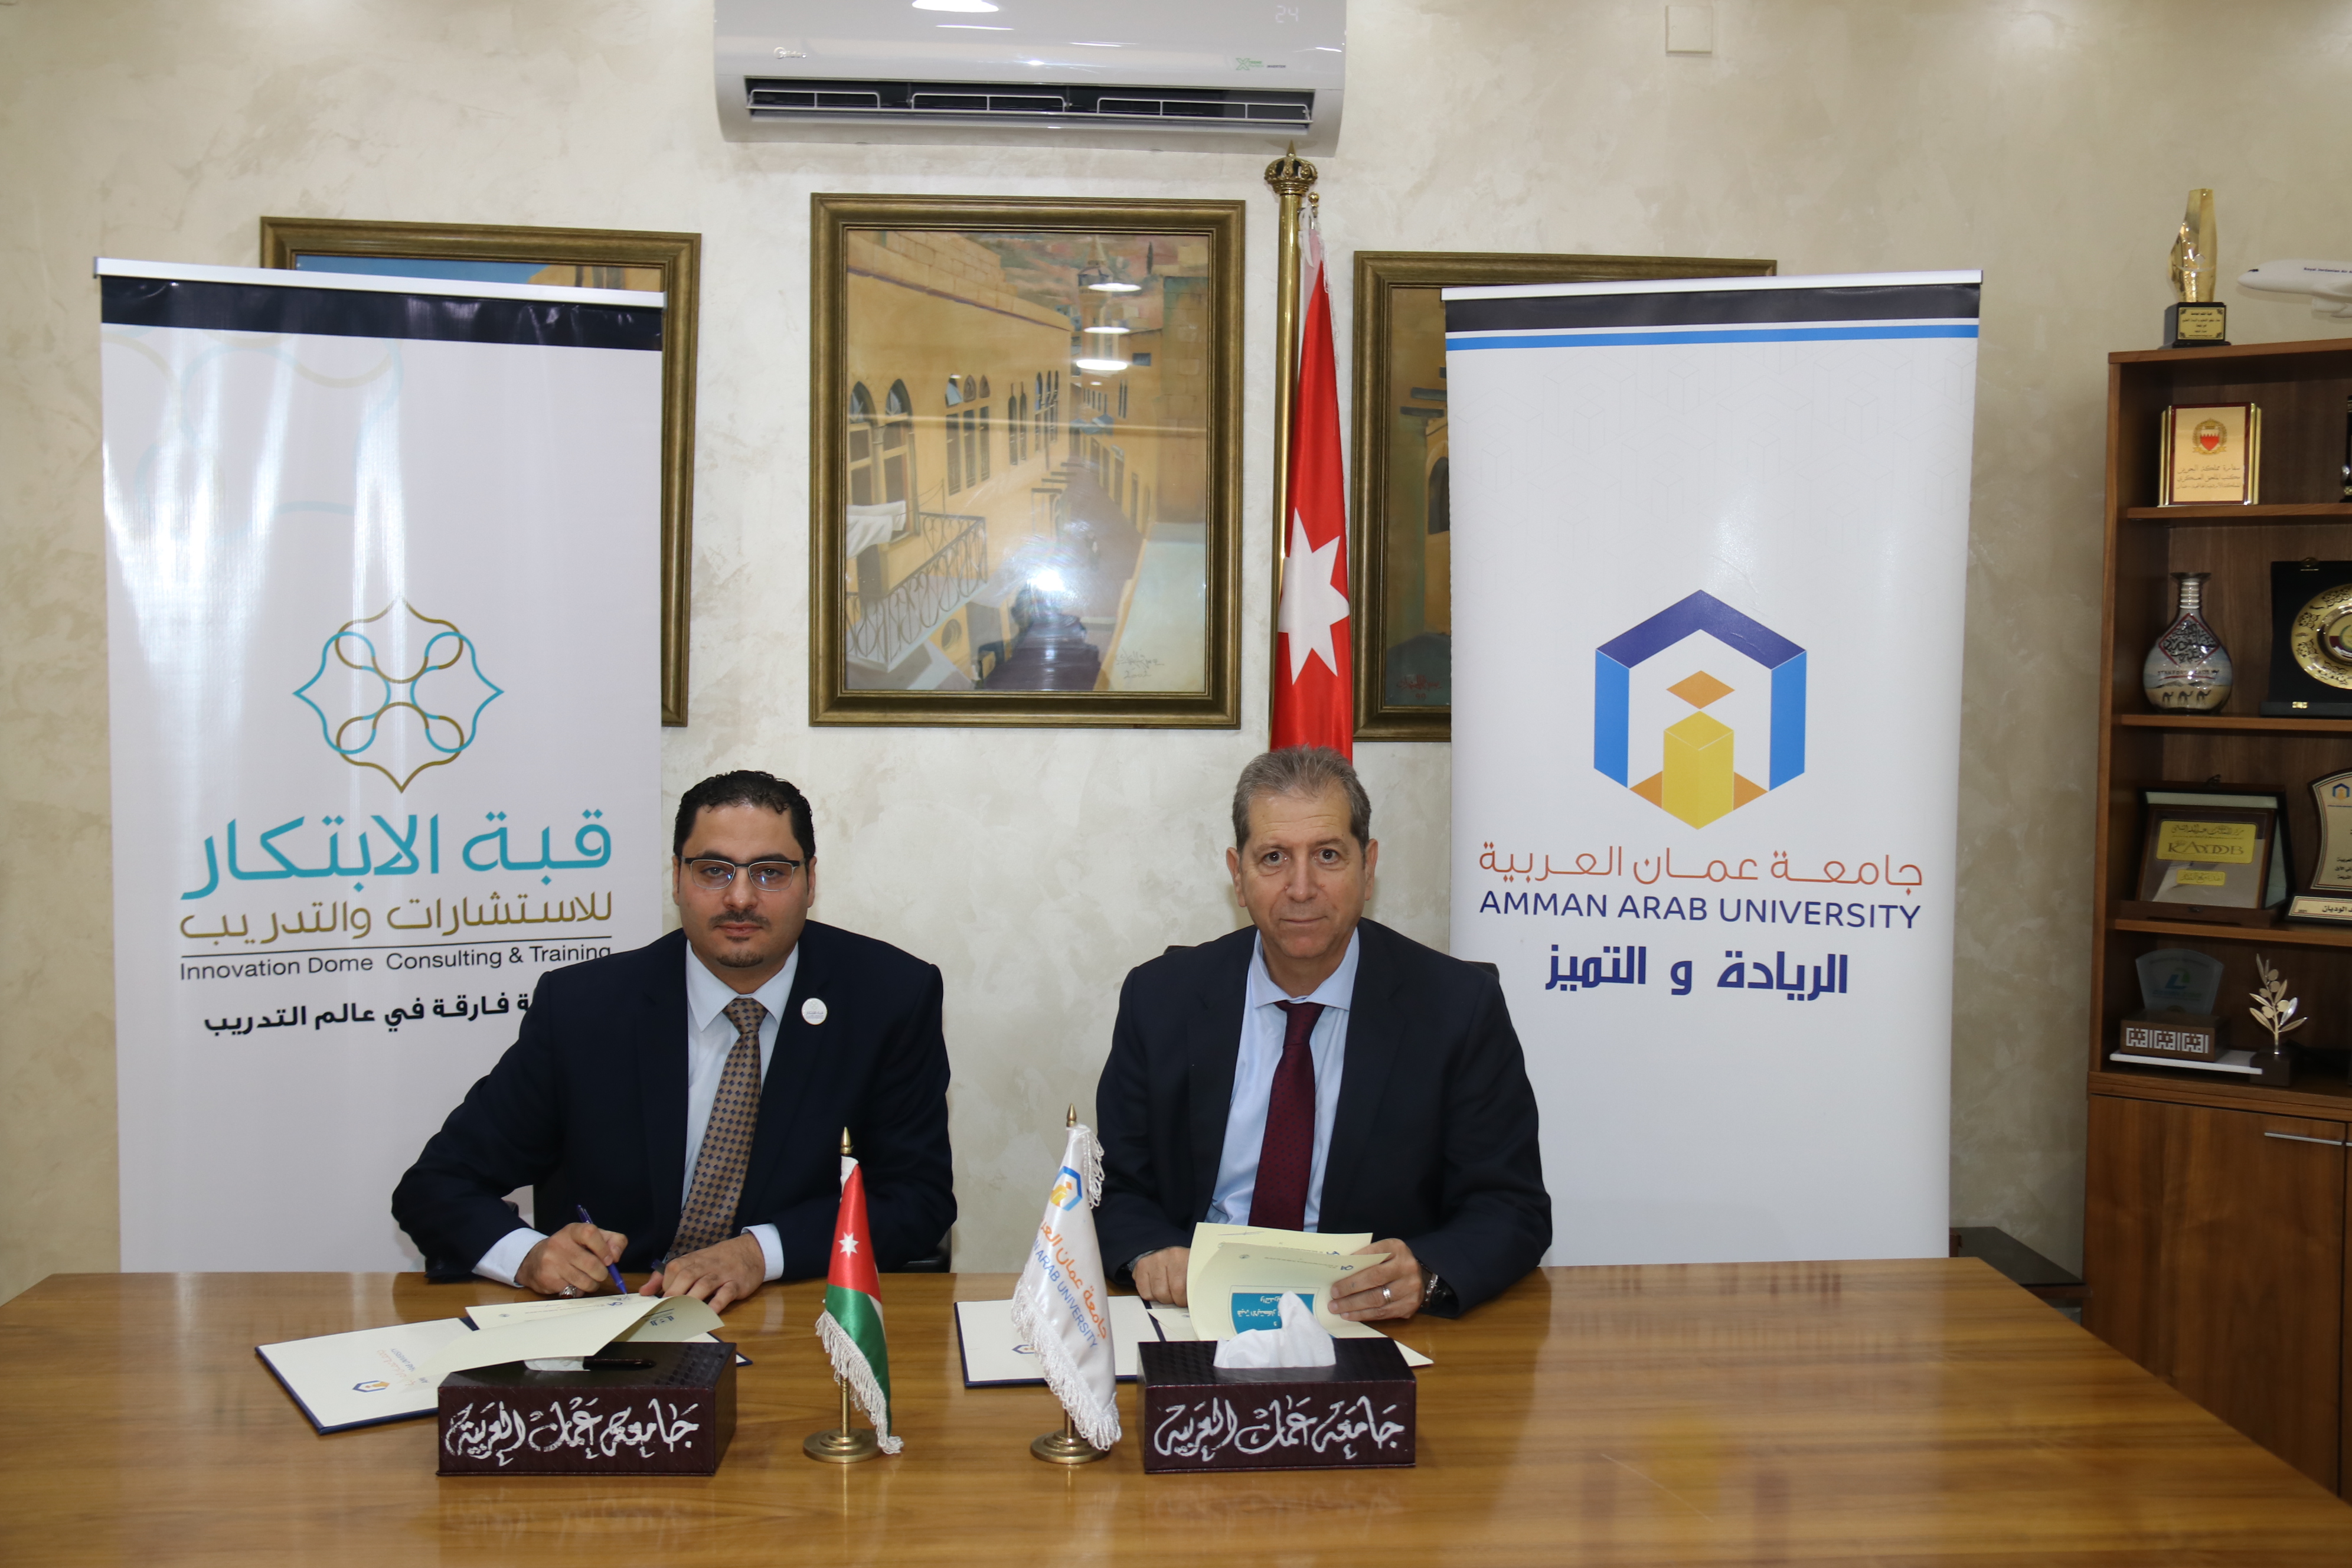 اتفاقية تعاون مشترك بين "عمان العربية" وقبـّة الابتكار للاستشارات والتدريب1